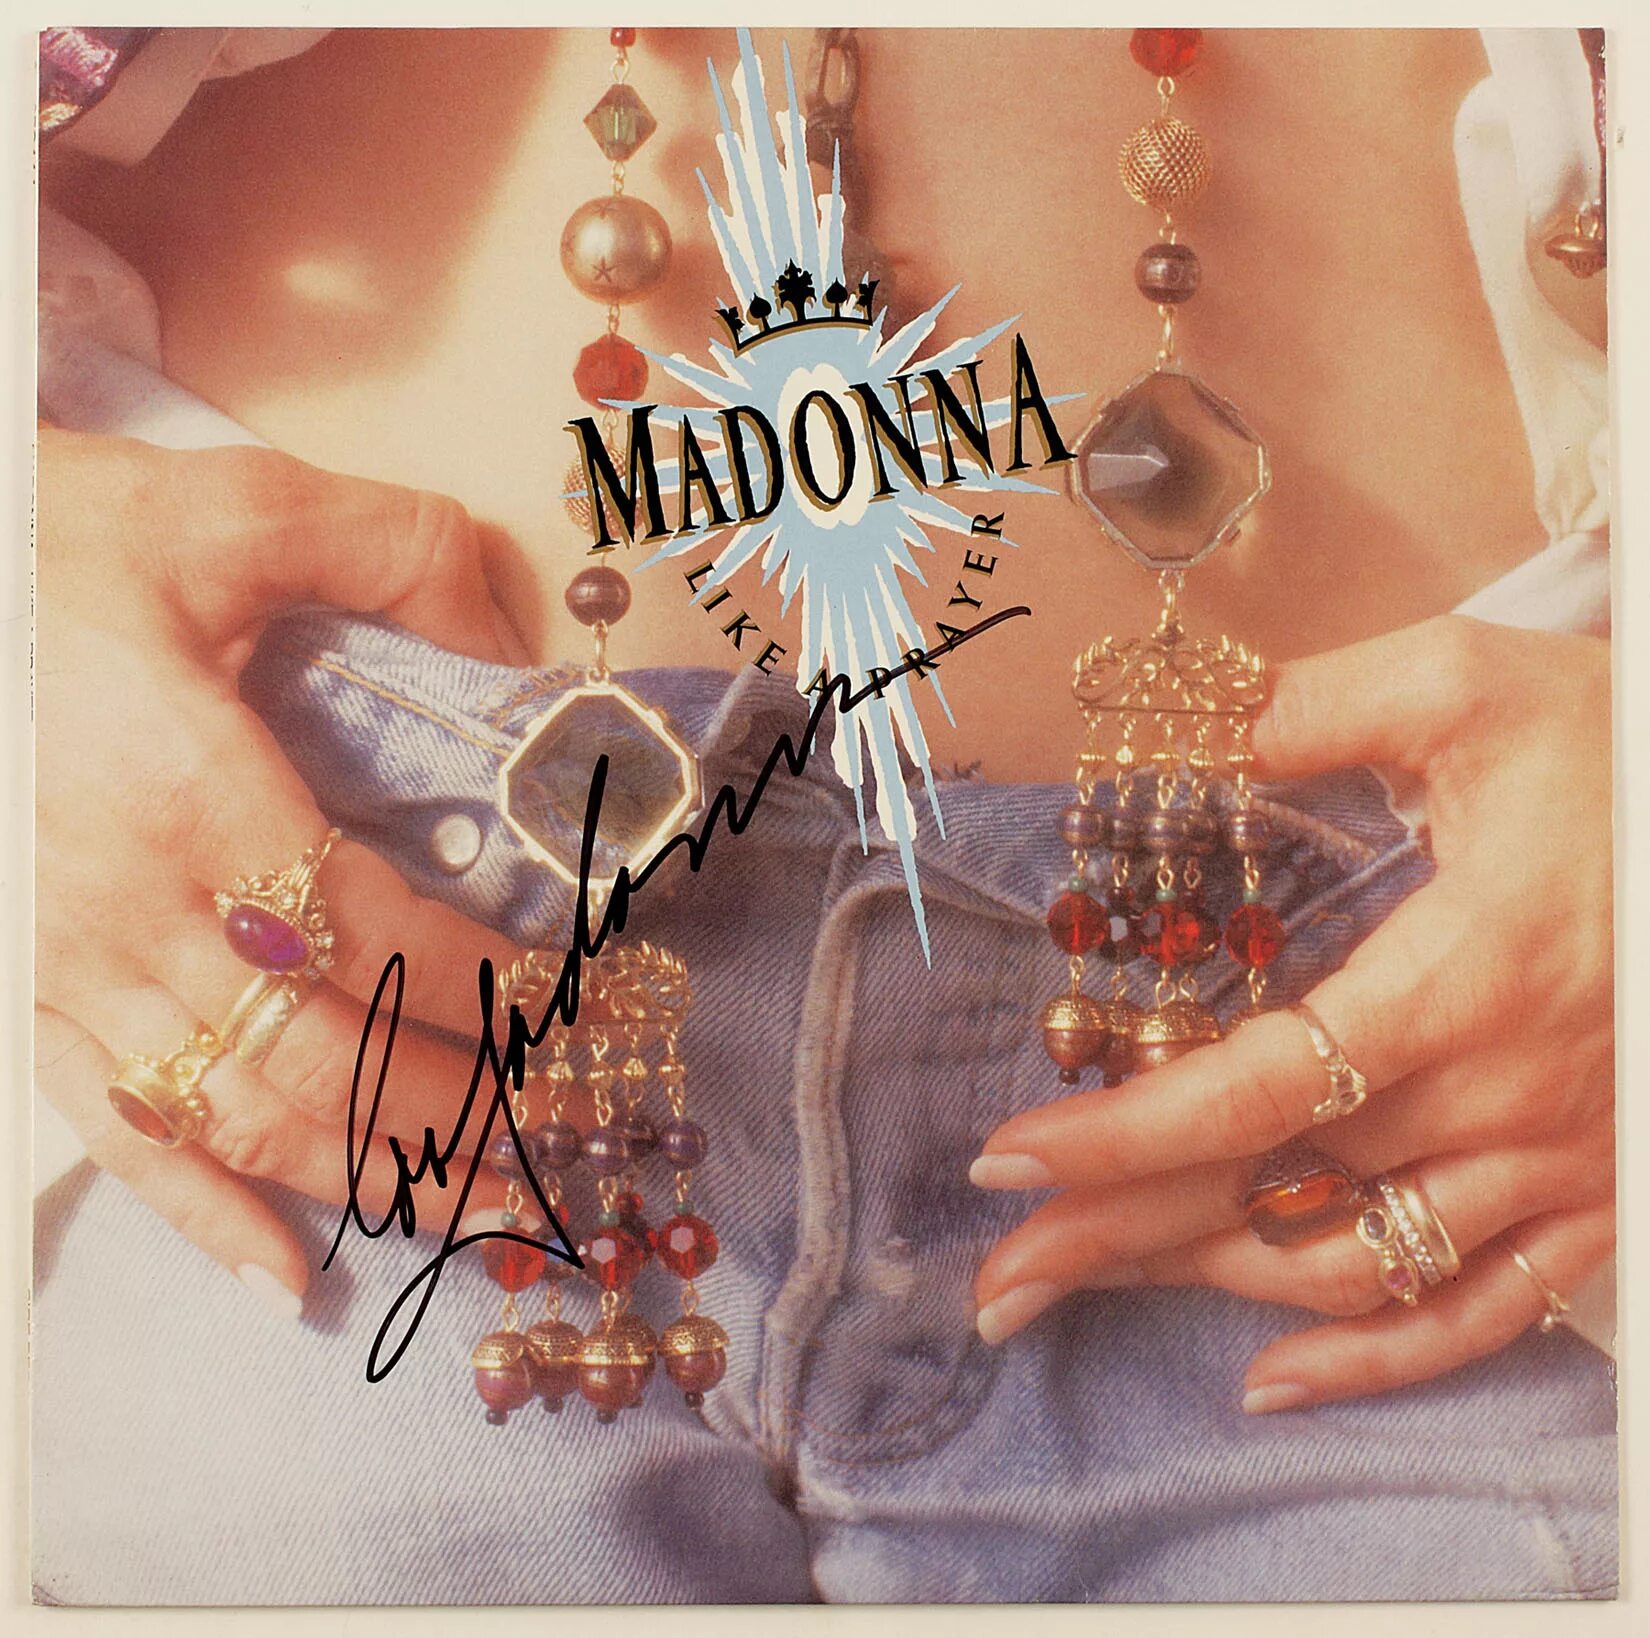 Like madonna песня. Madonna 1989 like a Prayer. Madonna like a Prayer обложка 1989. Madonna like a Prayer обложка. Обложка сингла.